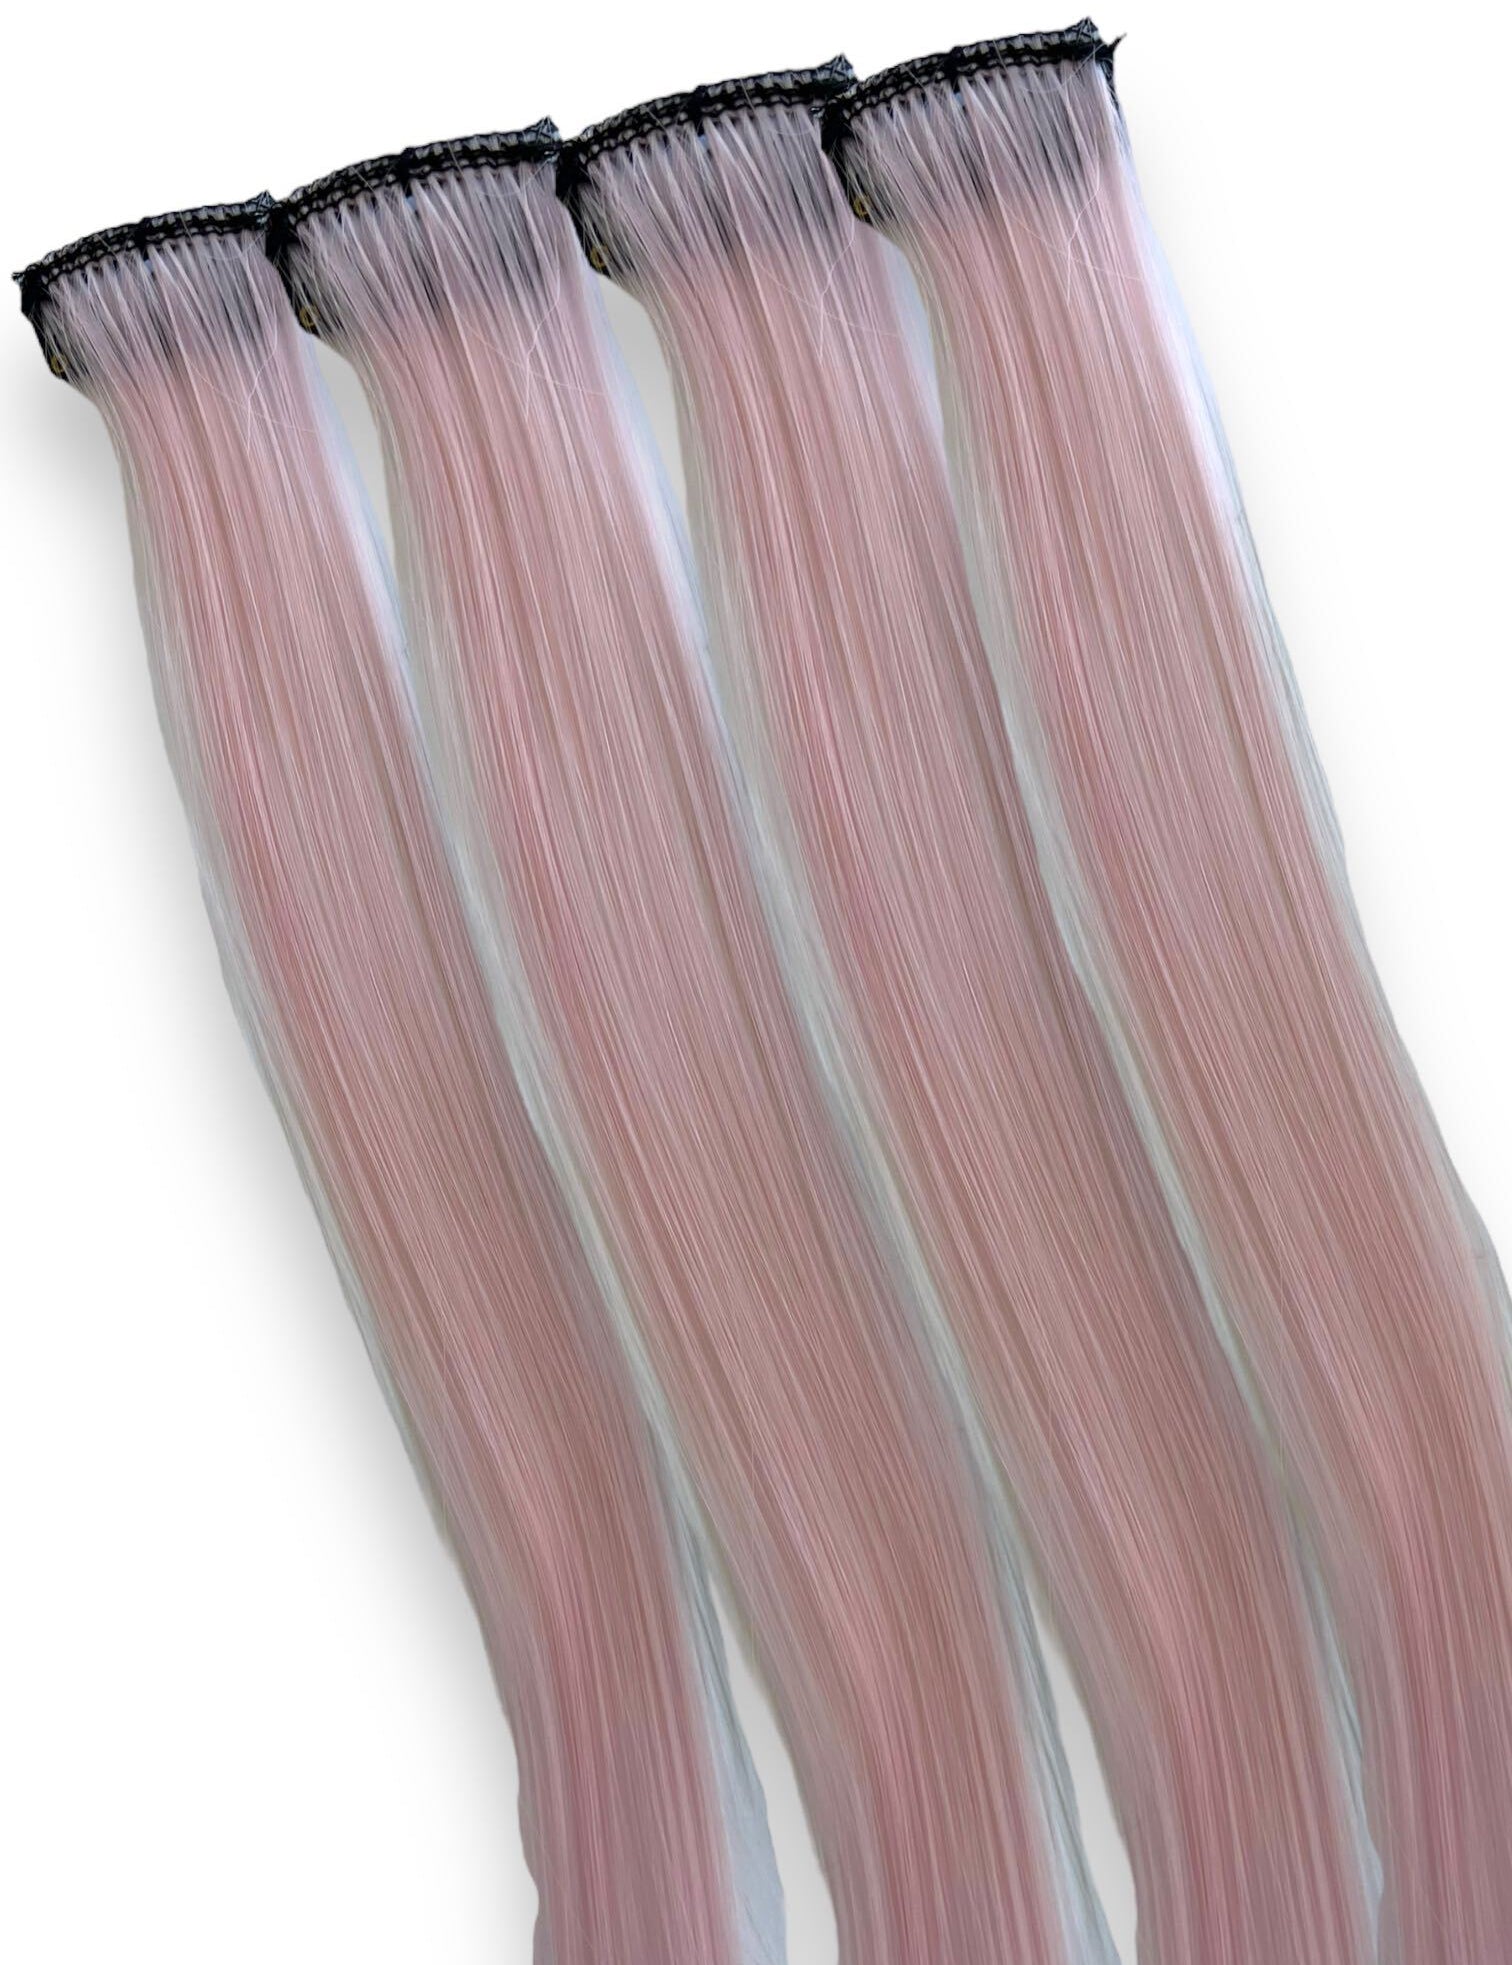 pastel-pink-hair-clip-in.jpg